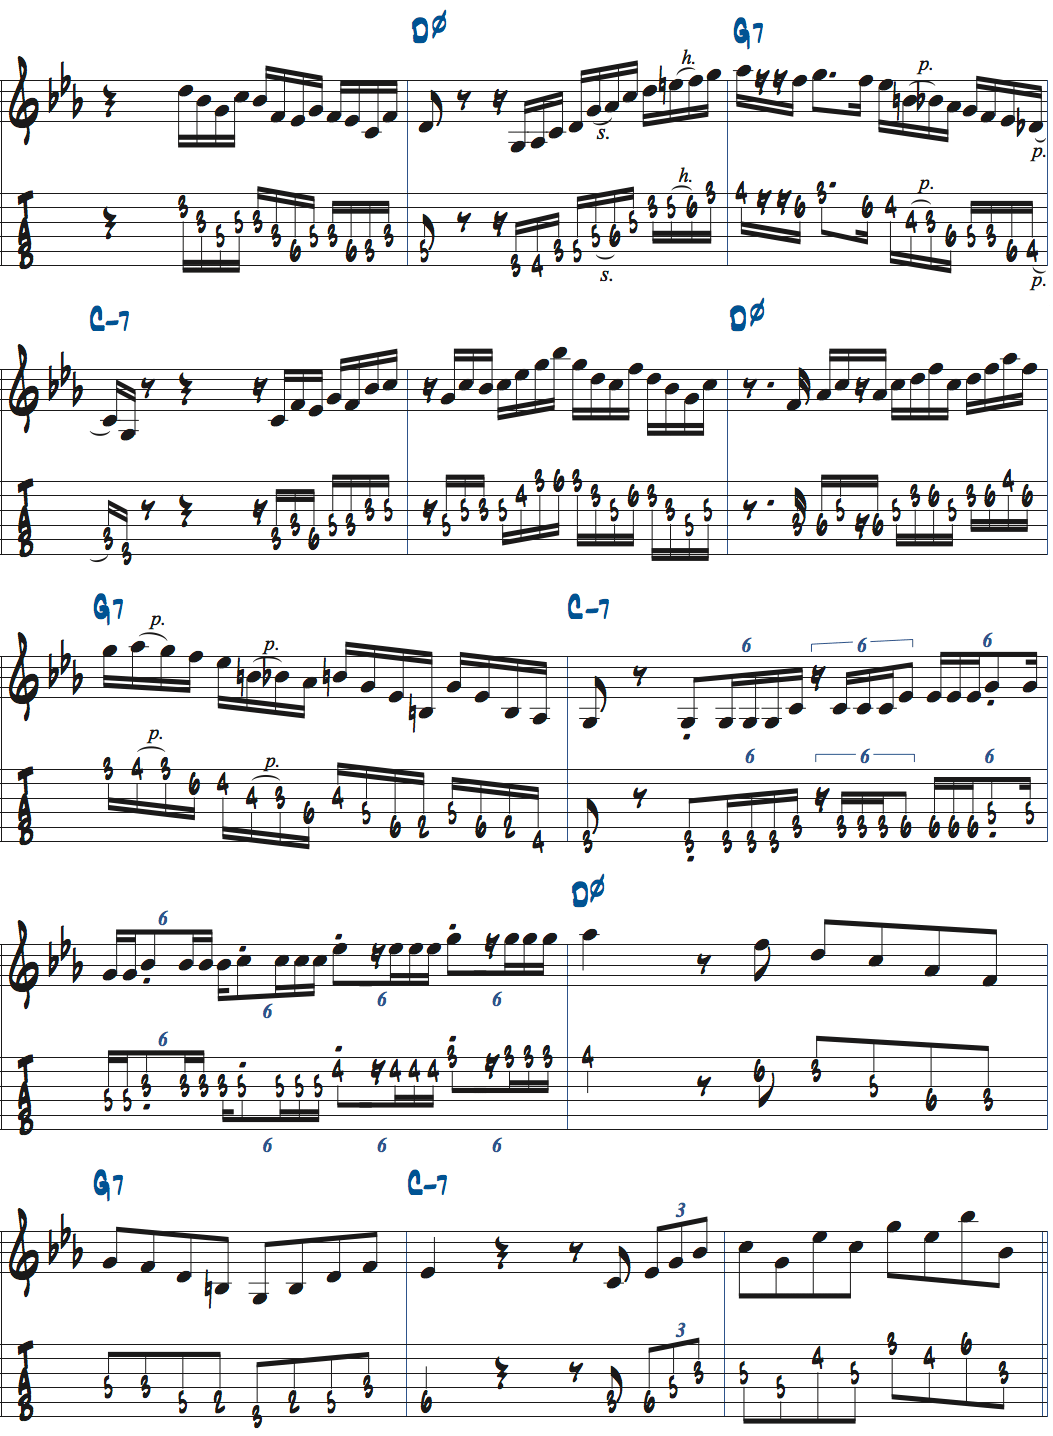 Dm7(b5)-G7-Cm7でのアドリブ例ページ2楽譜